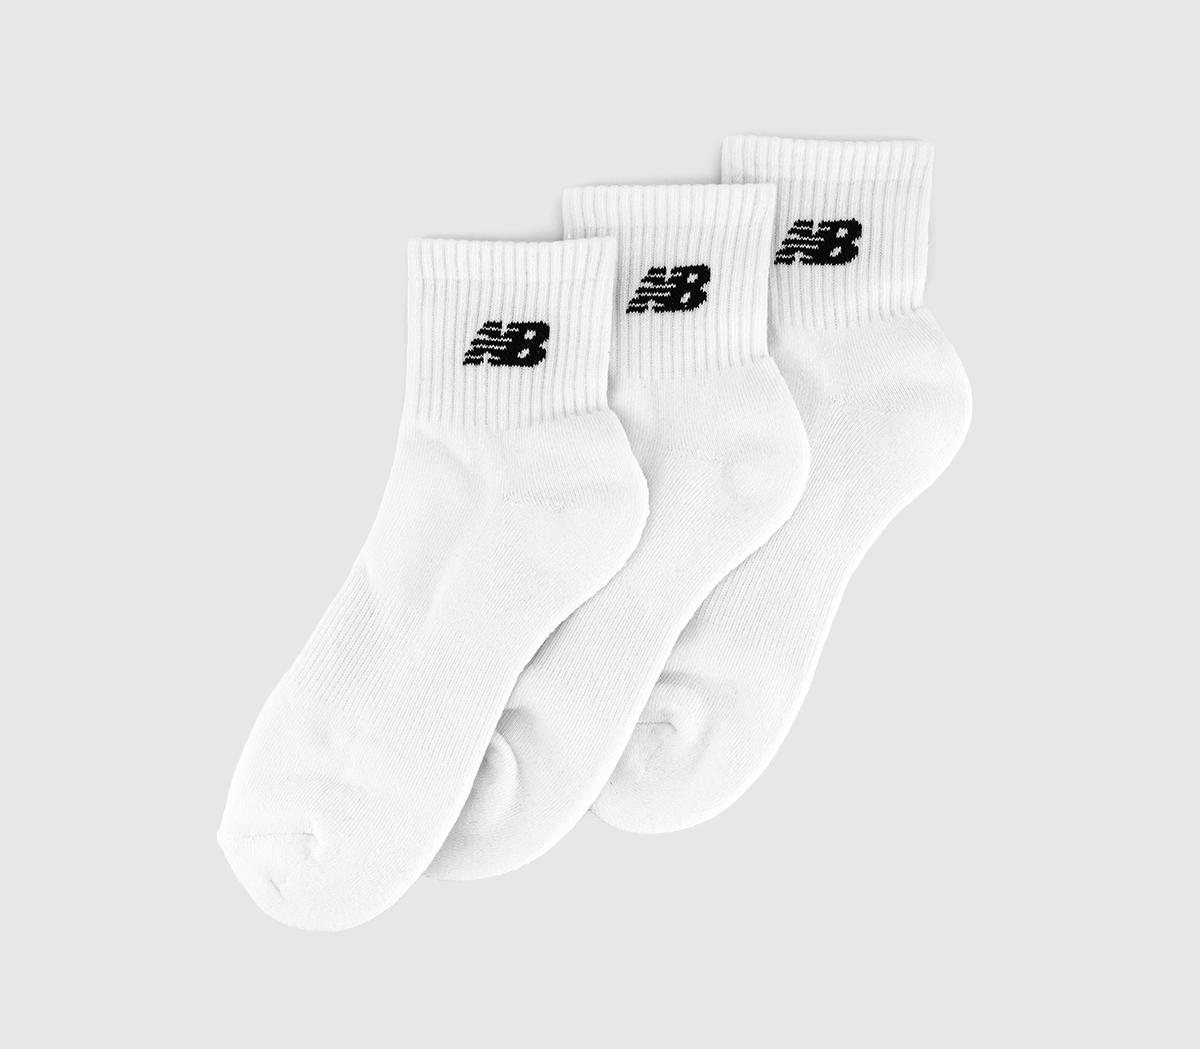 New Balance SocksEveryday Ankle Socks 3 PackWhite